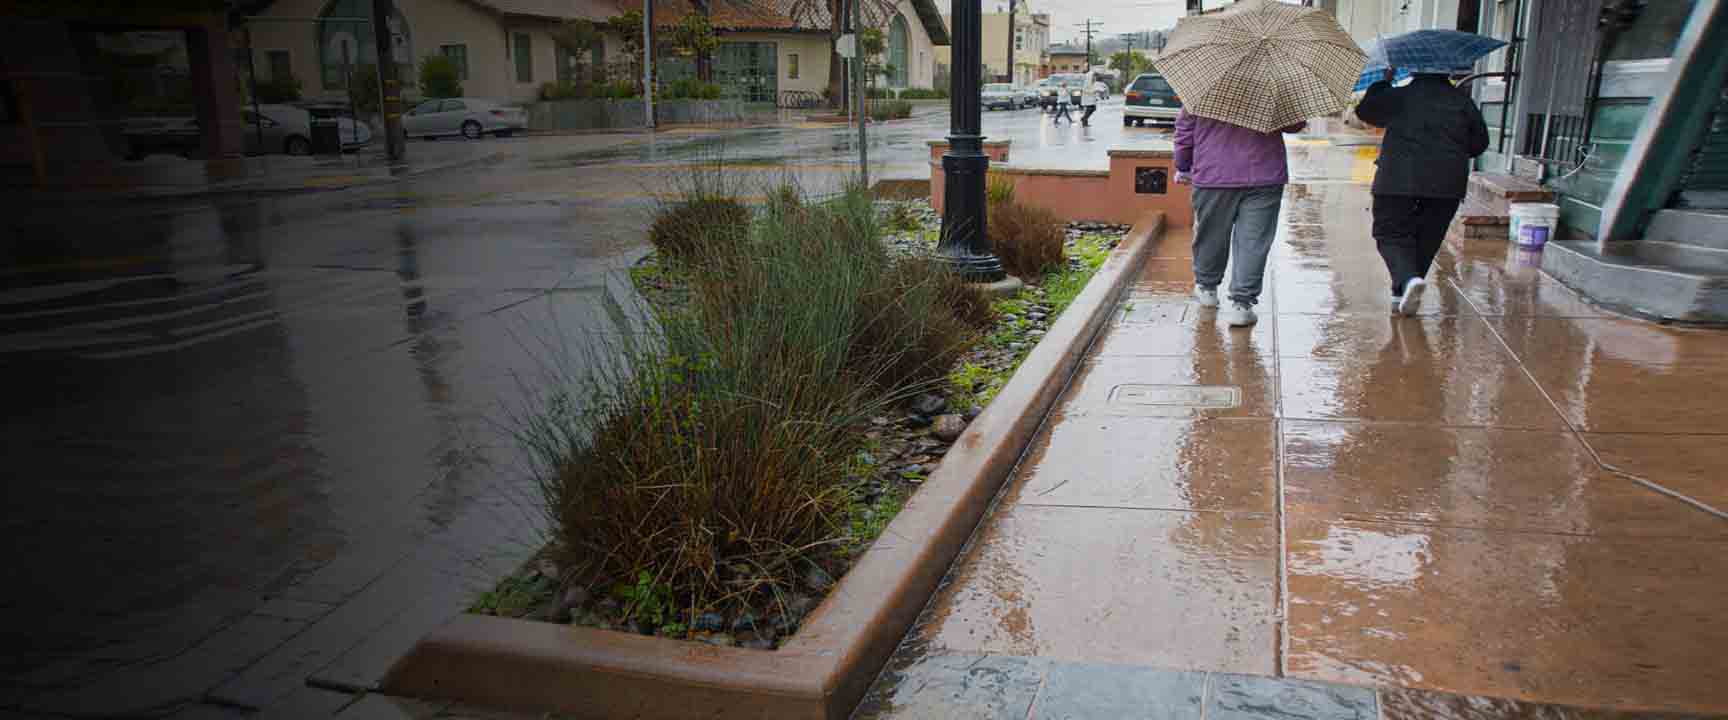 人們在雨中行走在人行道花園旁邊，該花園是幫助管理雨水徑流的綠色基礎設施。